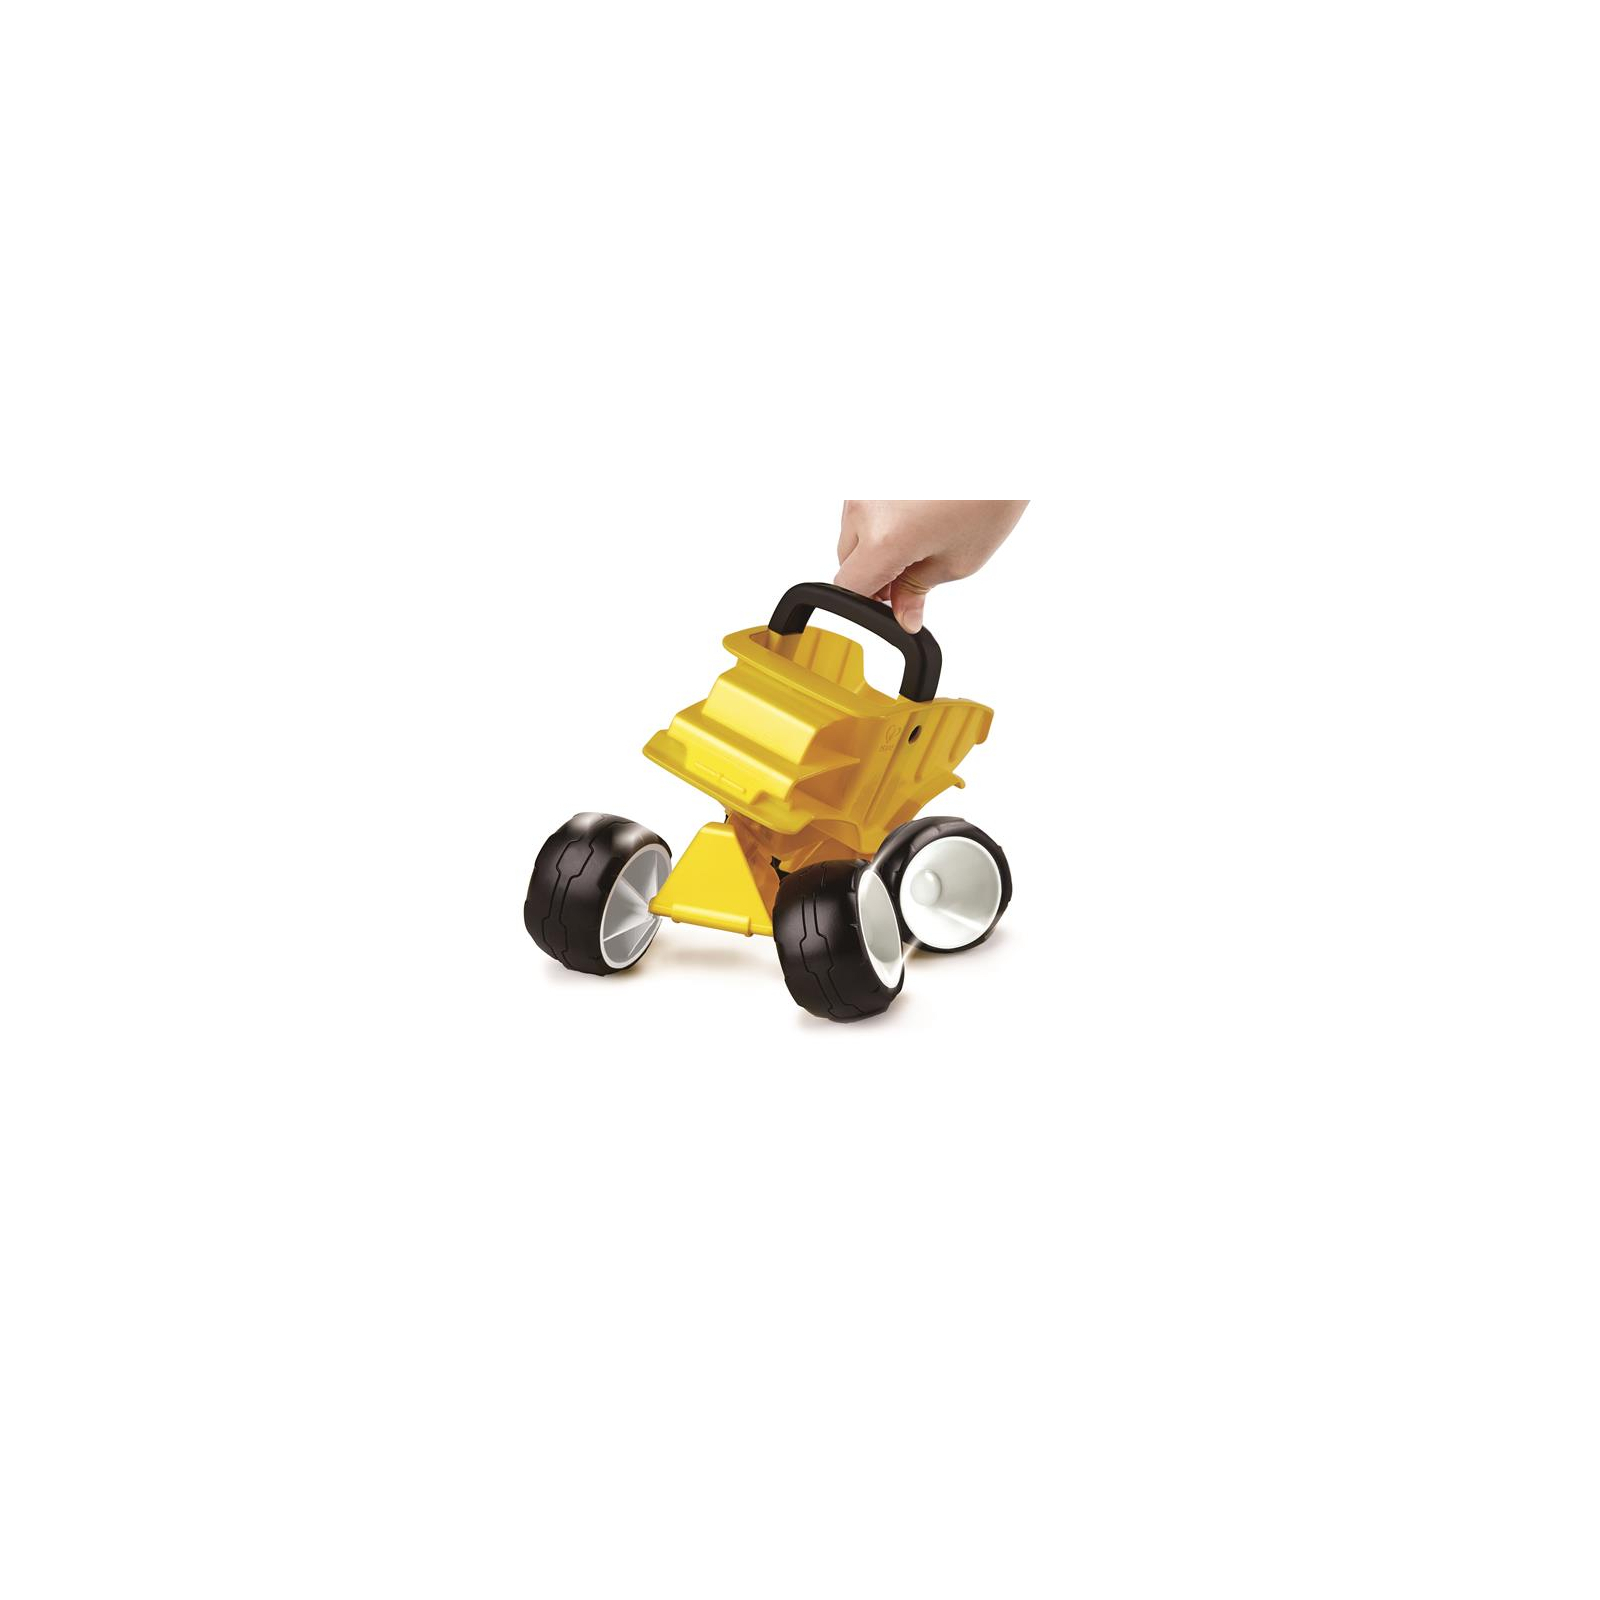 Игрушка для песка Hape Самосвал багги желтый (E4088) изображение 2